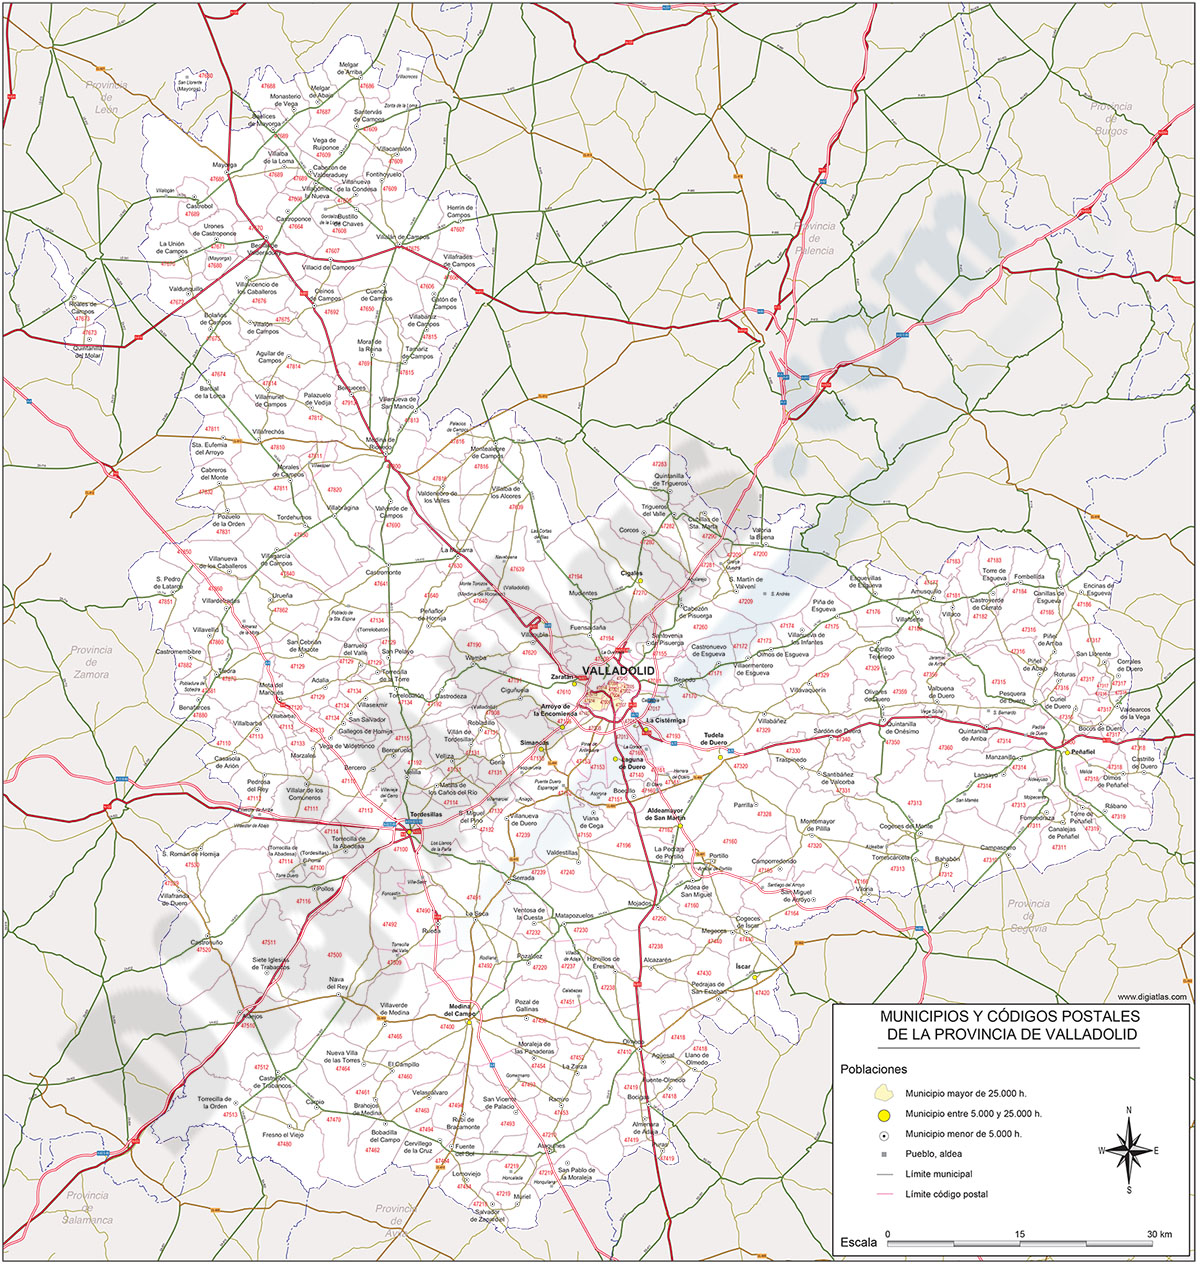 Valladolid - mapa provincial con municipios y Códigos Postales